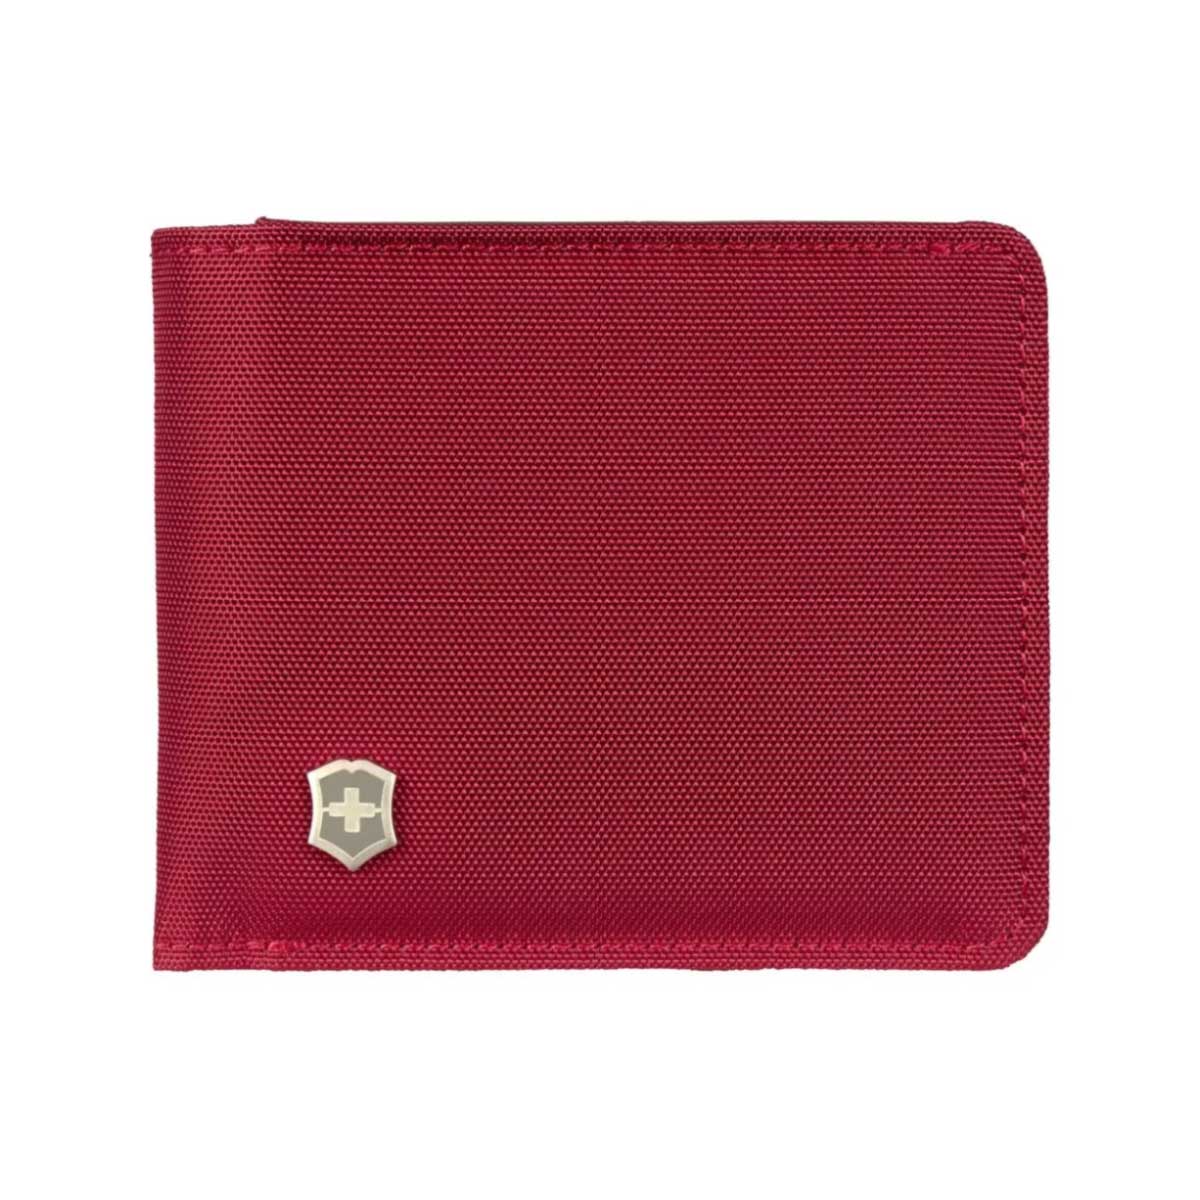 Carteira Victorinox Bi-Fold Coin Pouch - Nylon - Porta Cartões e Moedas - Vermelho - 611972